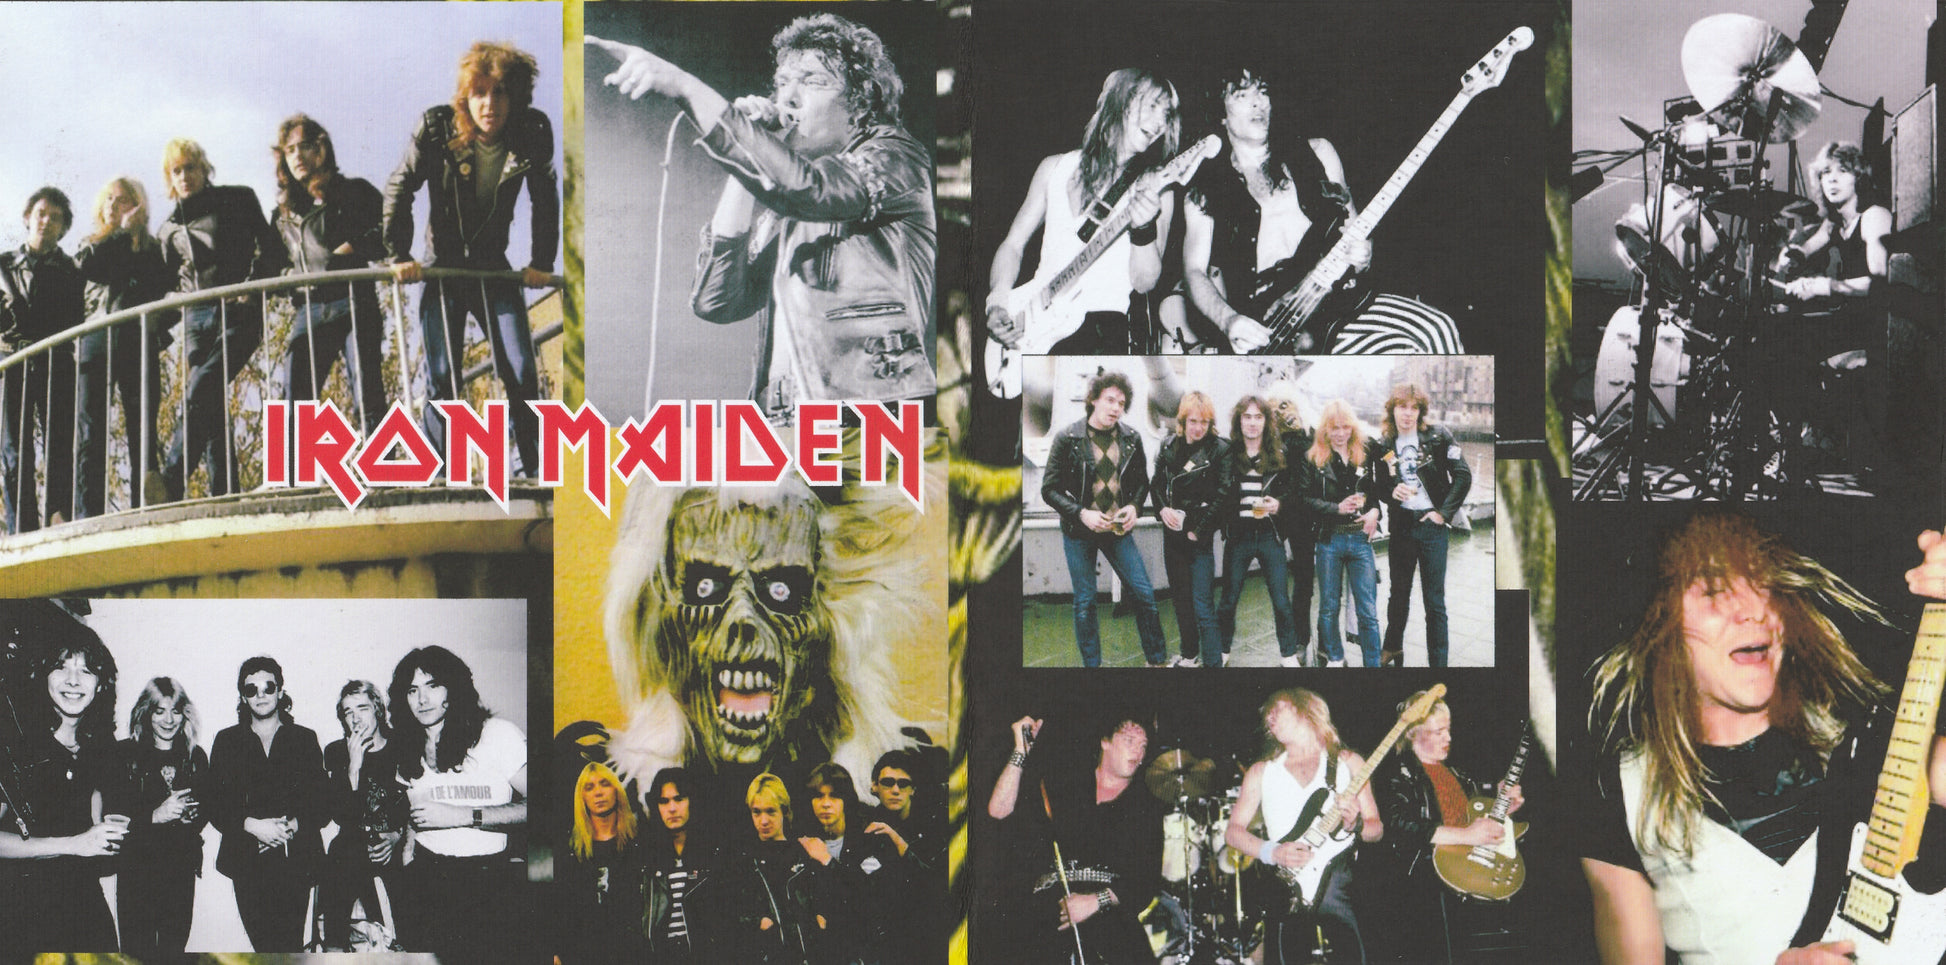 Iron Maiden - Summerfest Milwaukee 1981 CD – skilometal